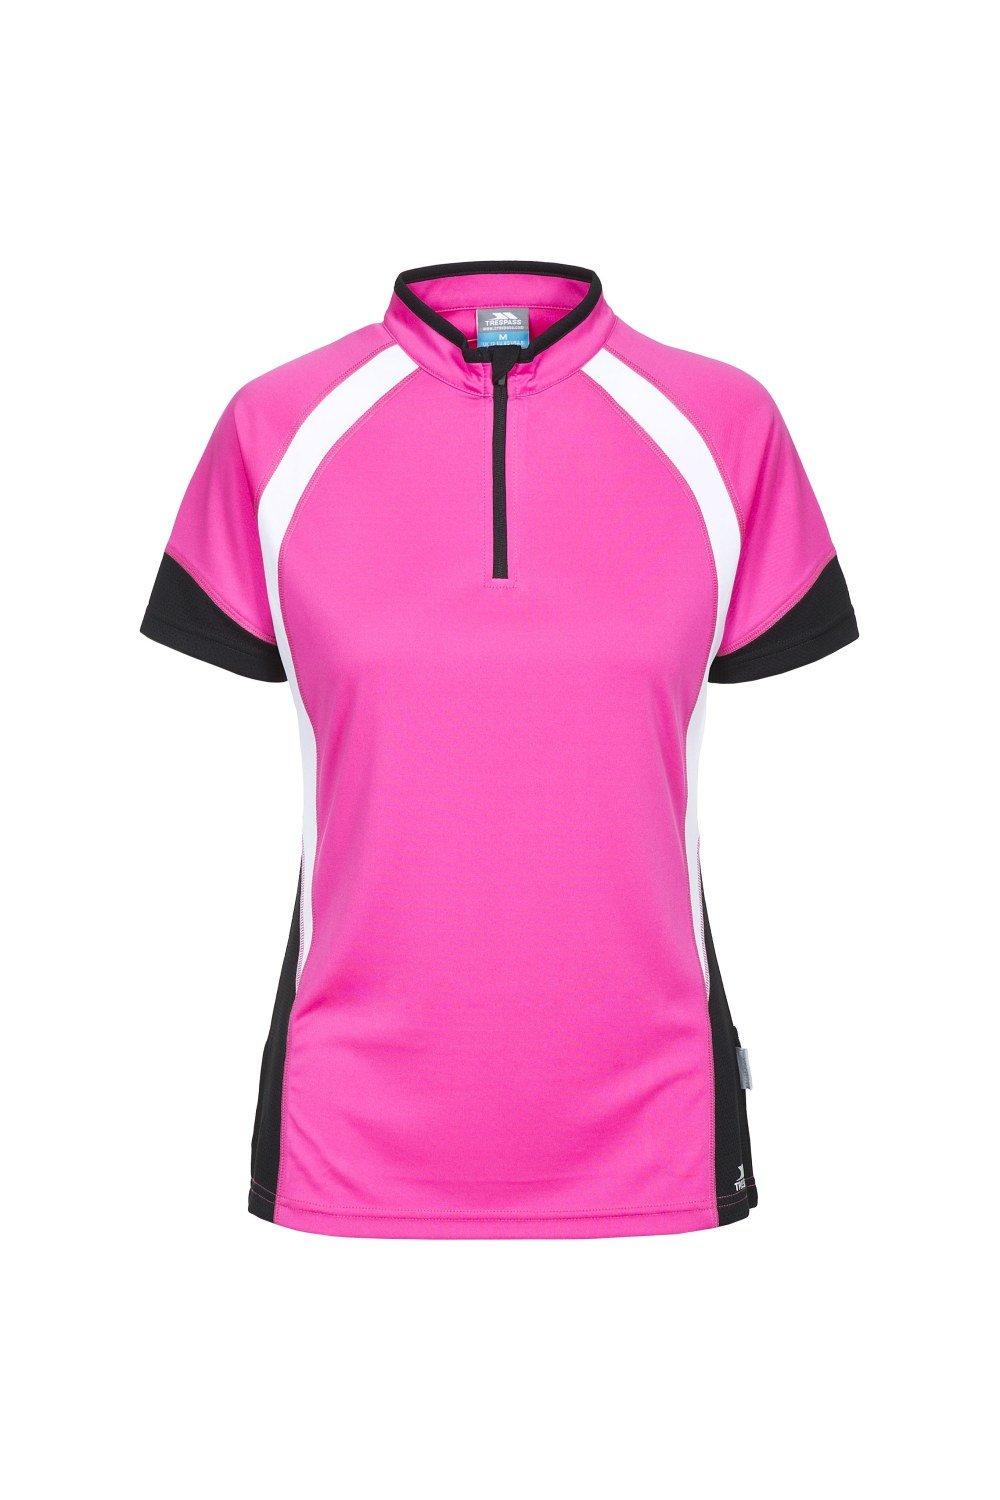 Велосипедная футболка Harpa с короткими рукавами Trespass, розовый